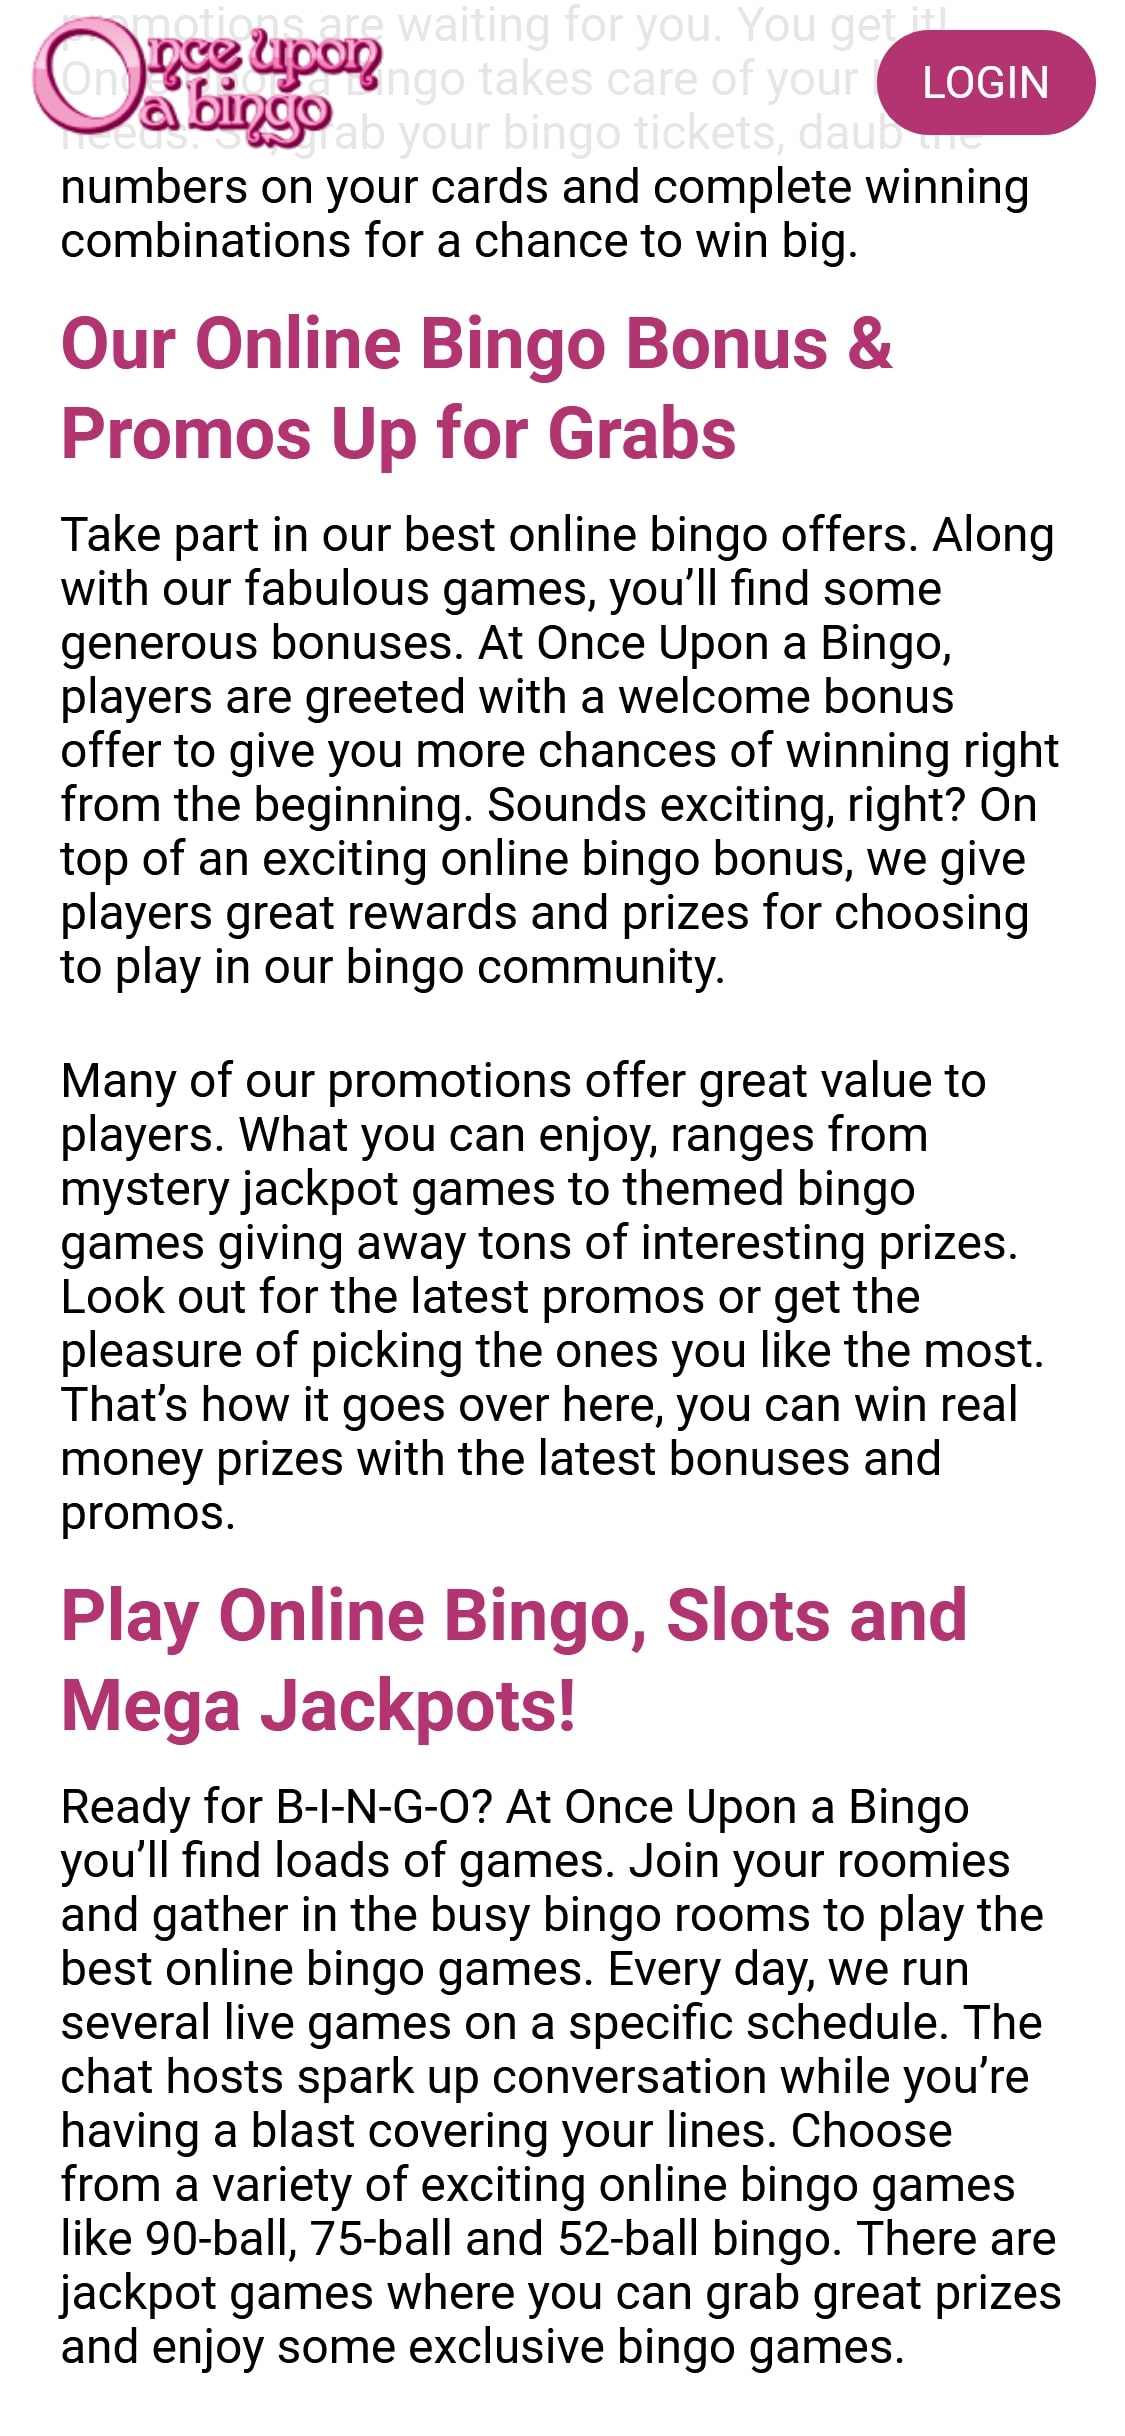 Once Upon a Bingo Casino Mobile No Deposit Bonus Review